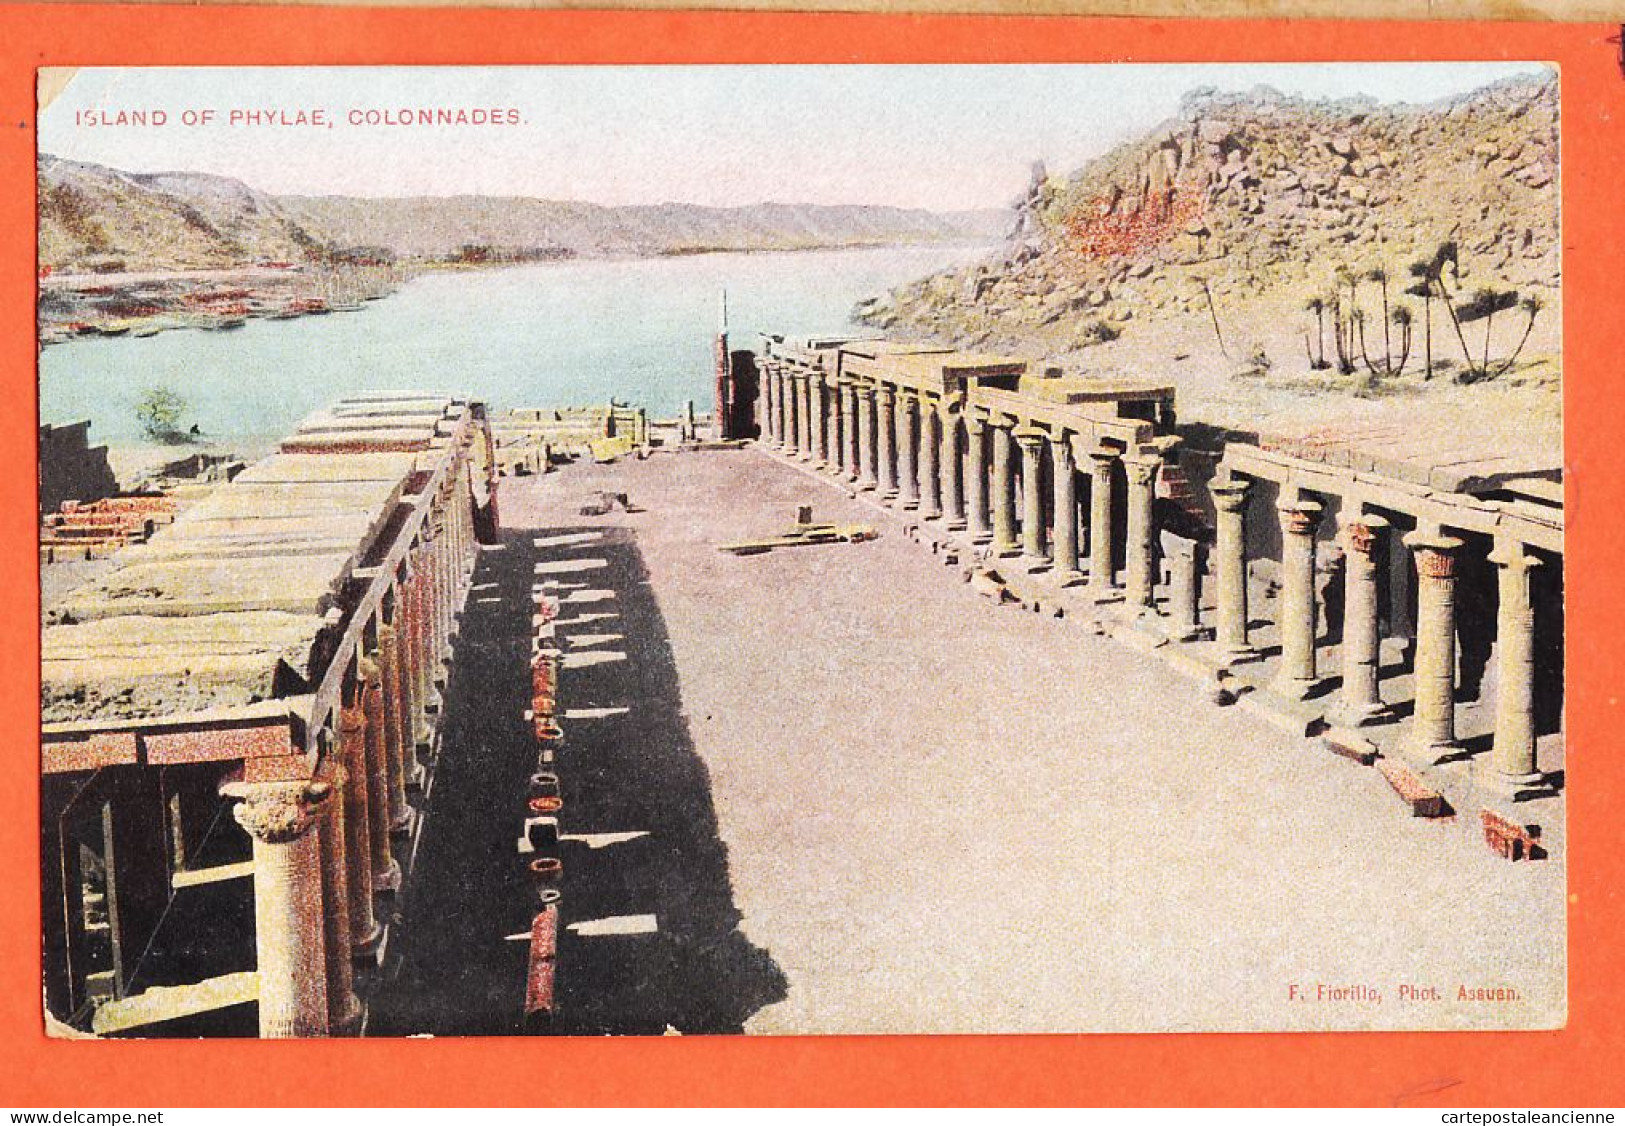 14999 / ⭐ Island PHYLAE ◉ F. FIORILLO Photo Assuan Lichtenstern & Harari 244 ◉ Colonnades Assouan ◉ Egypt 1905s Egypt - Assuan